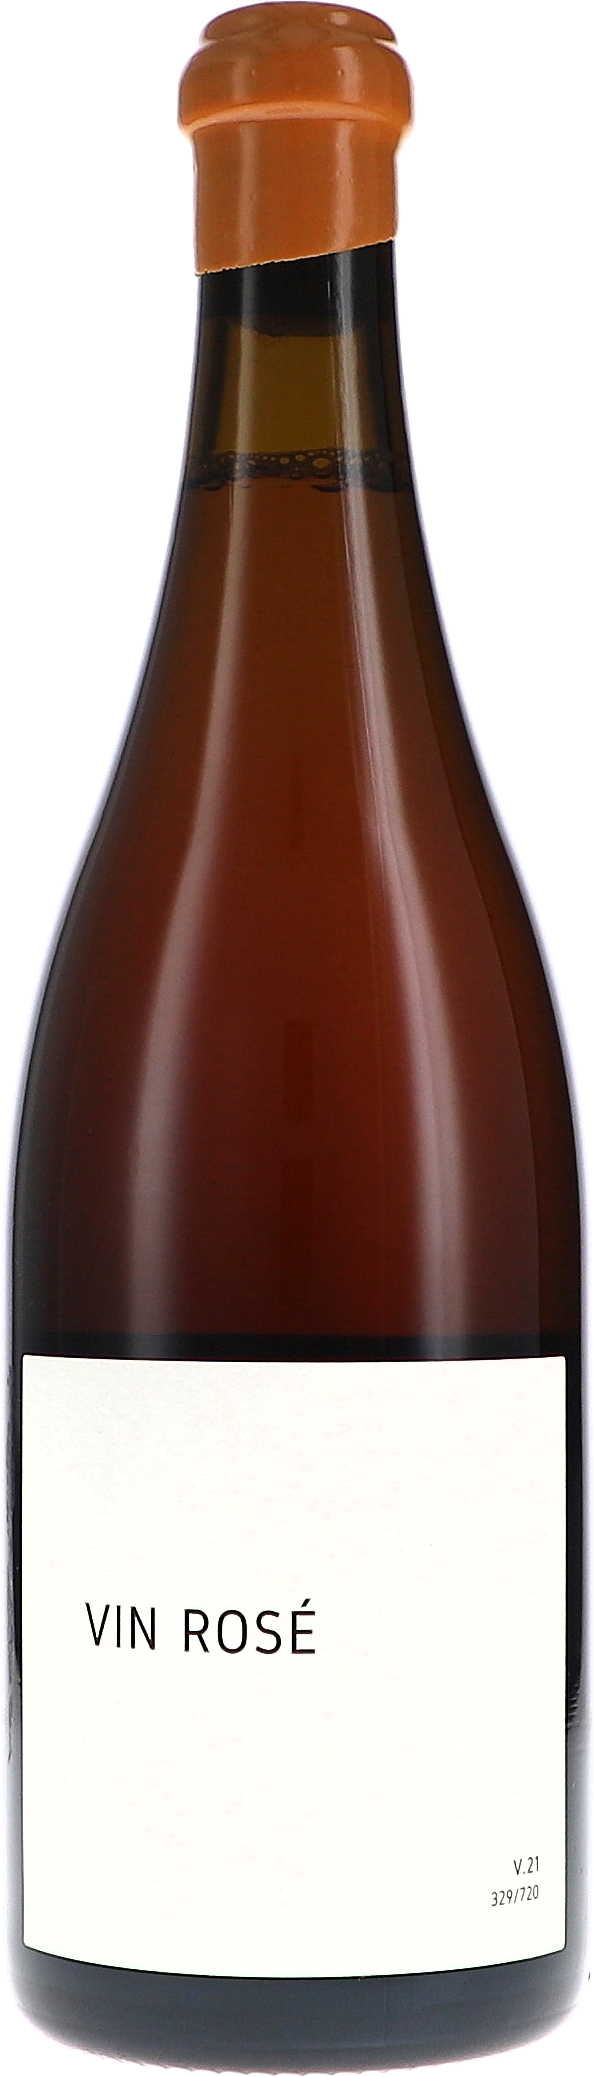 Vin Rosé V.21, Coteaux Champenois